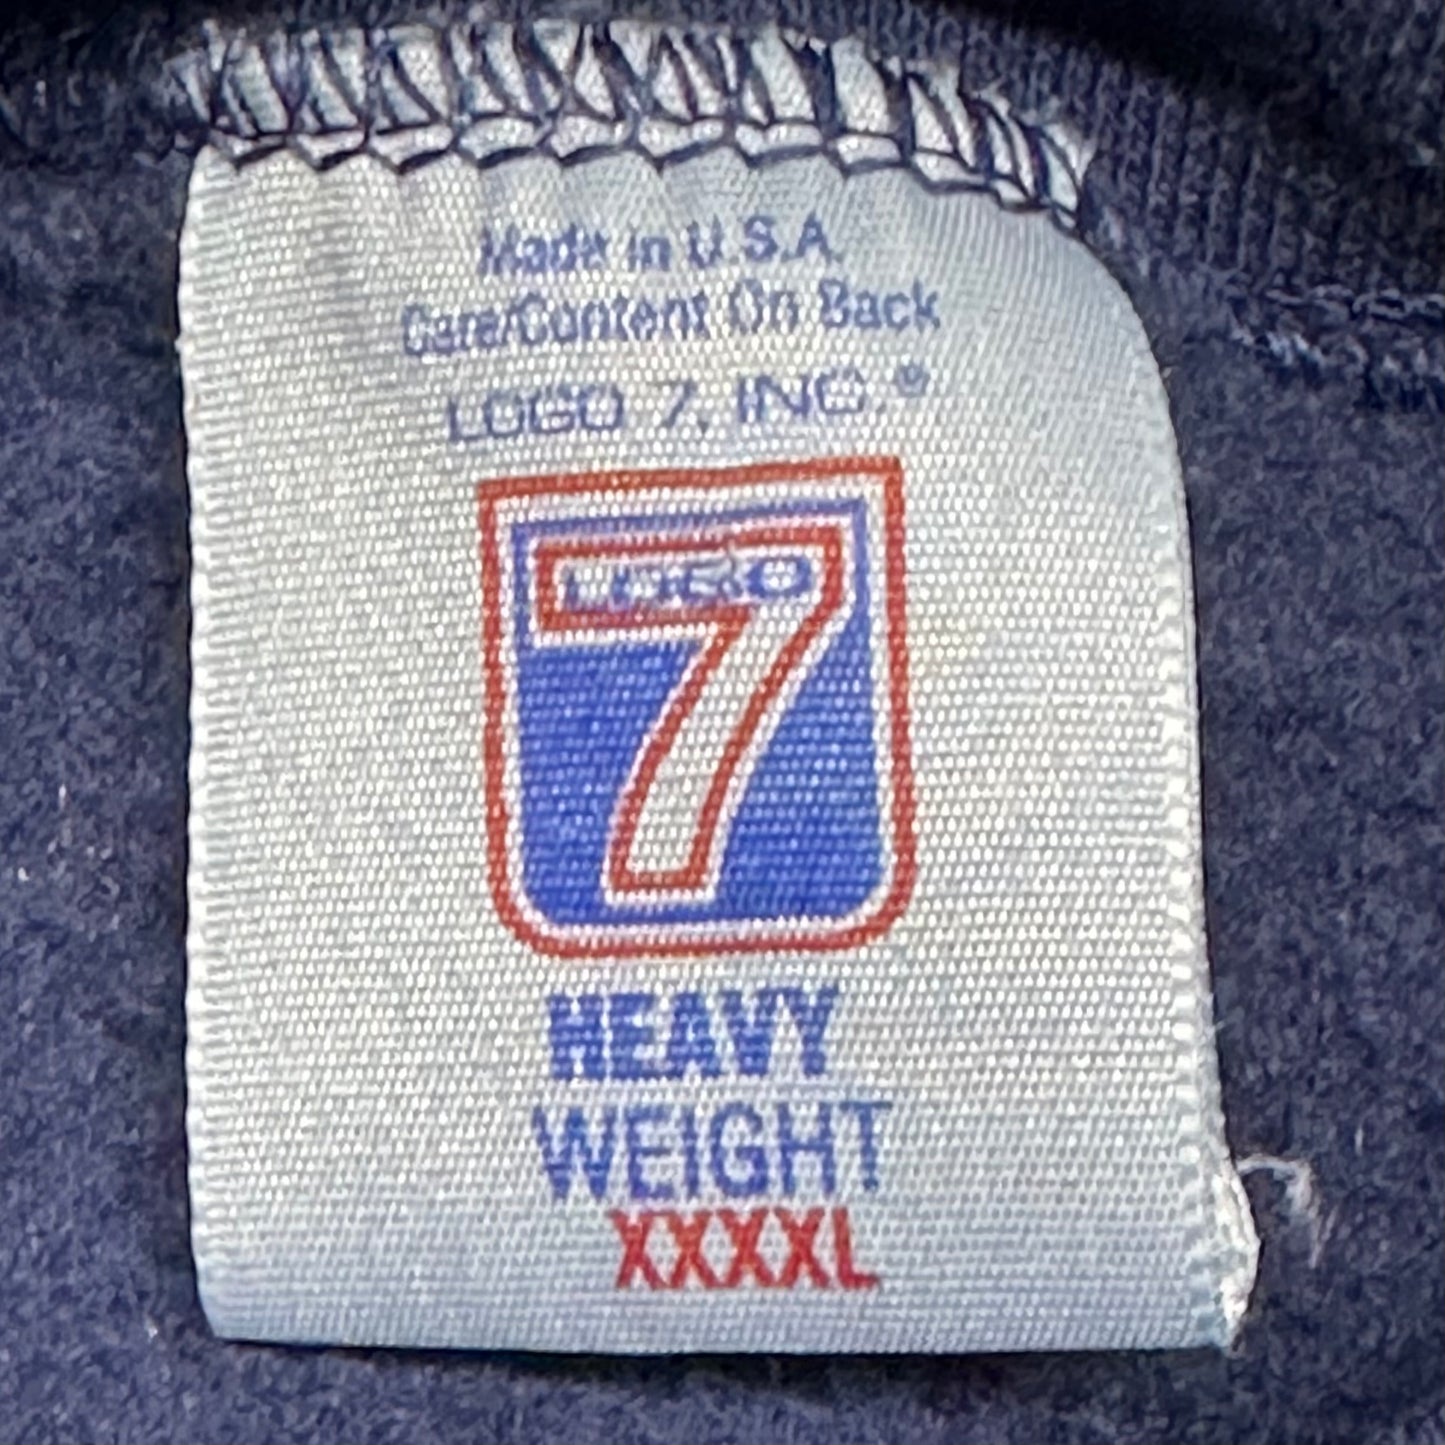 Cleveland Indians, 1990s Logo 7 Embroidered Sweatshirt, Size: XXXXL